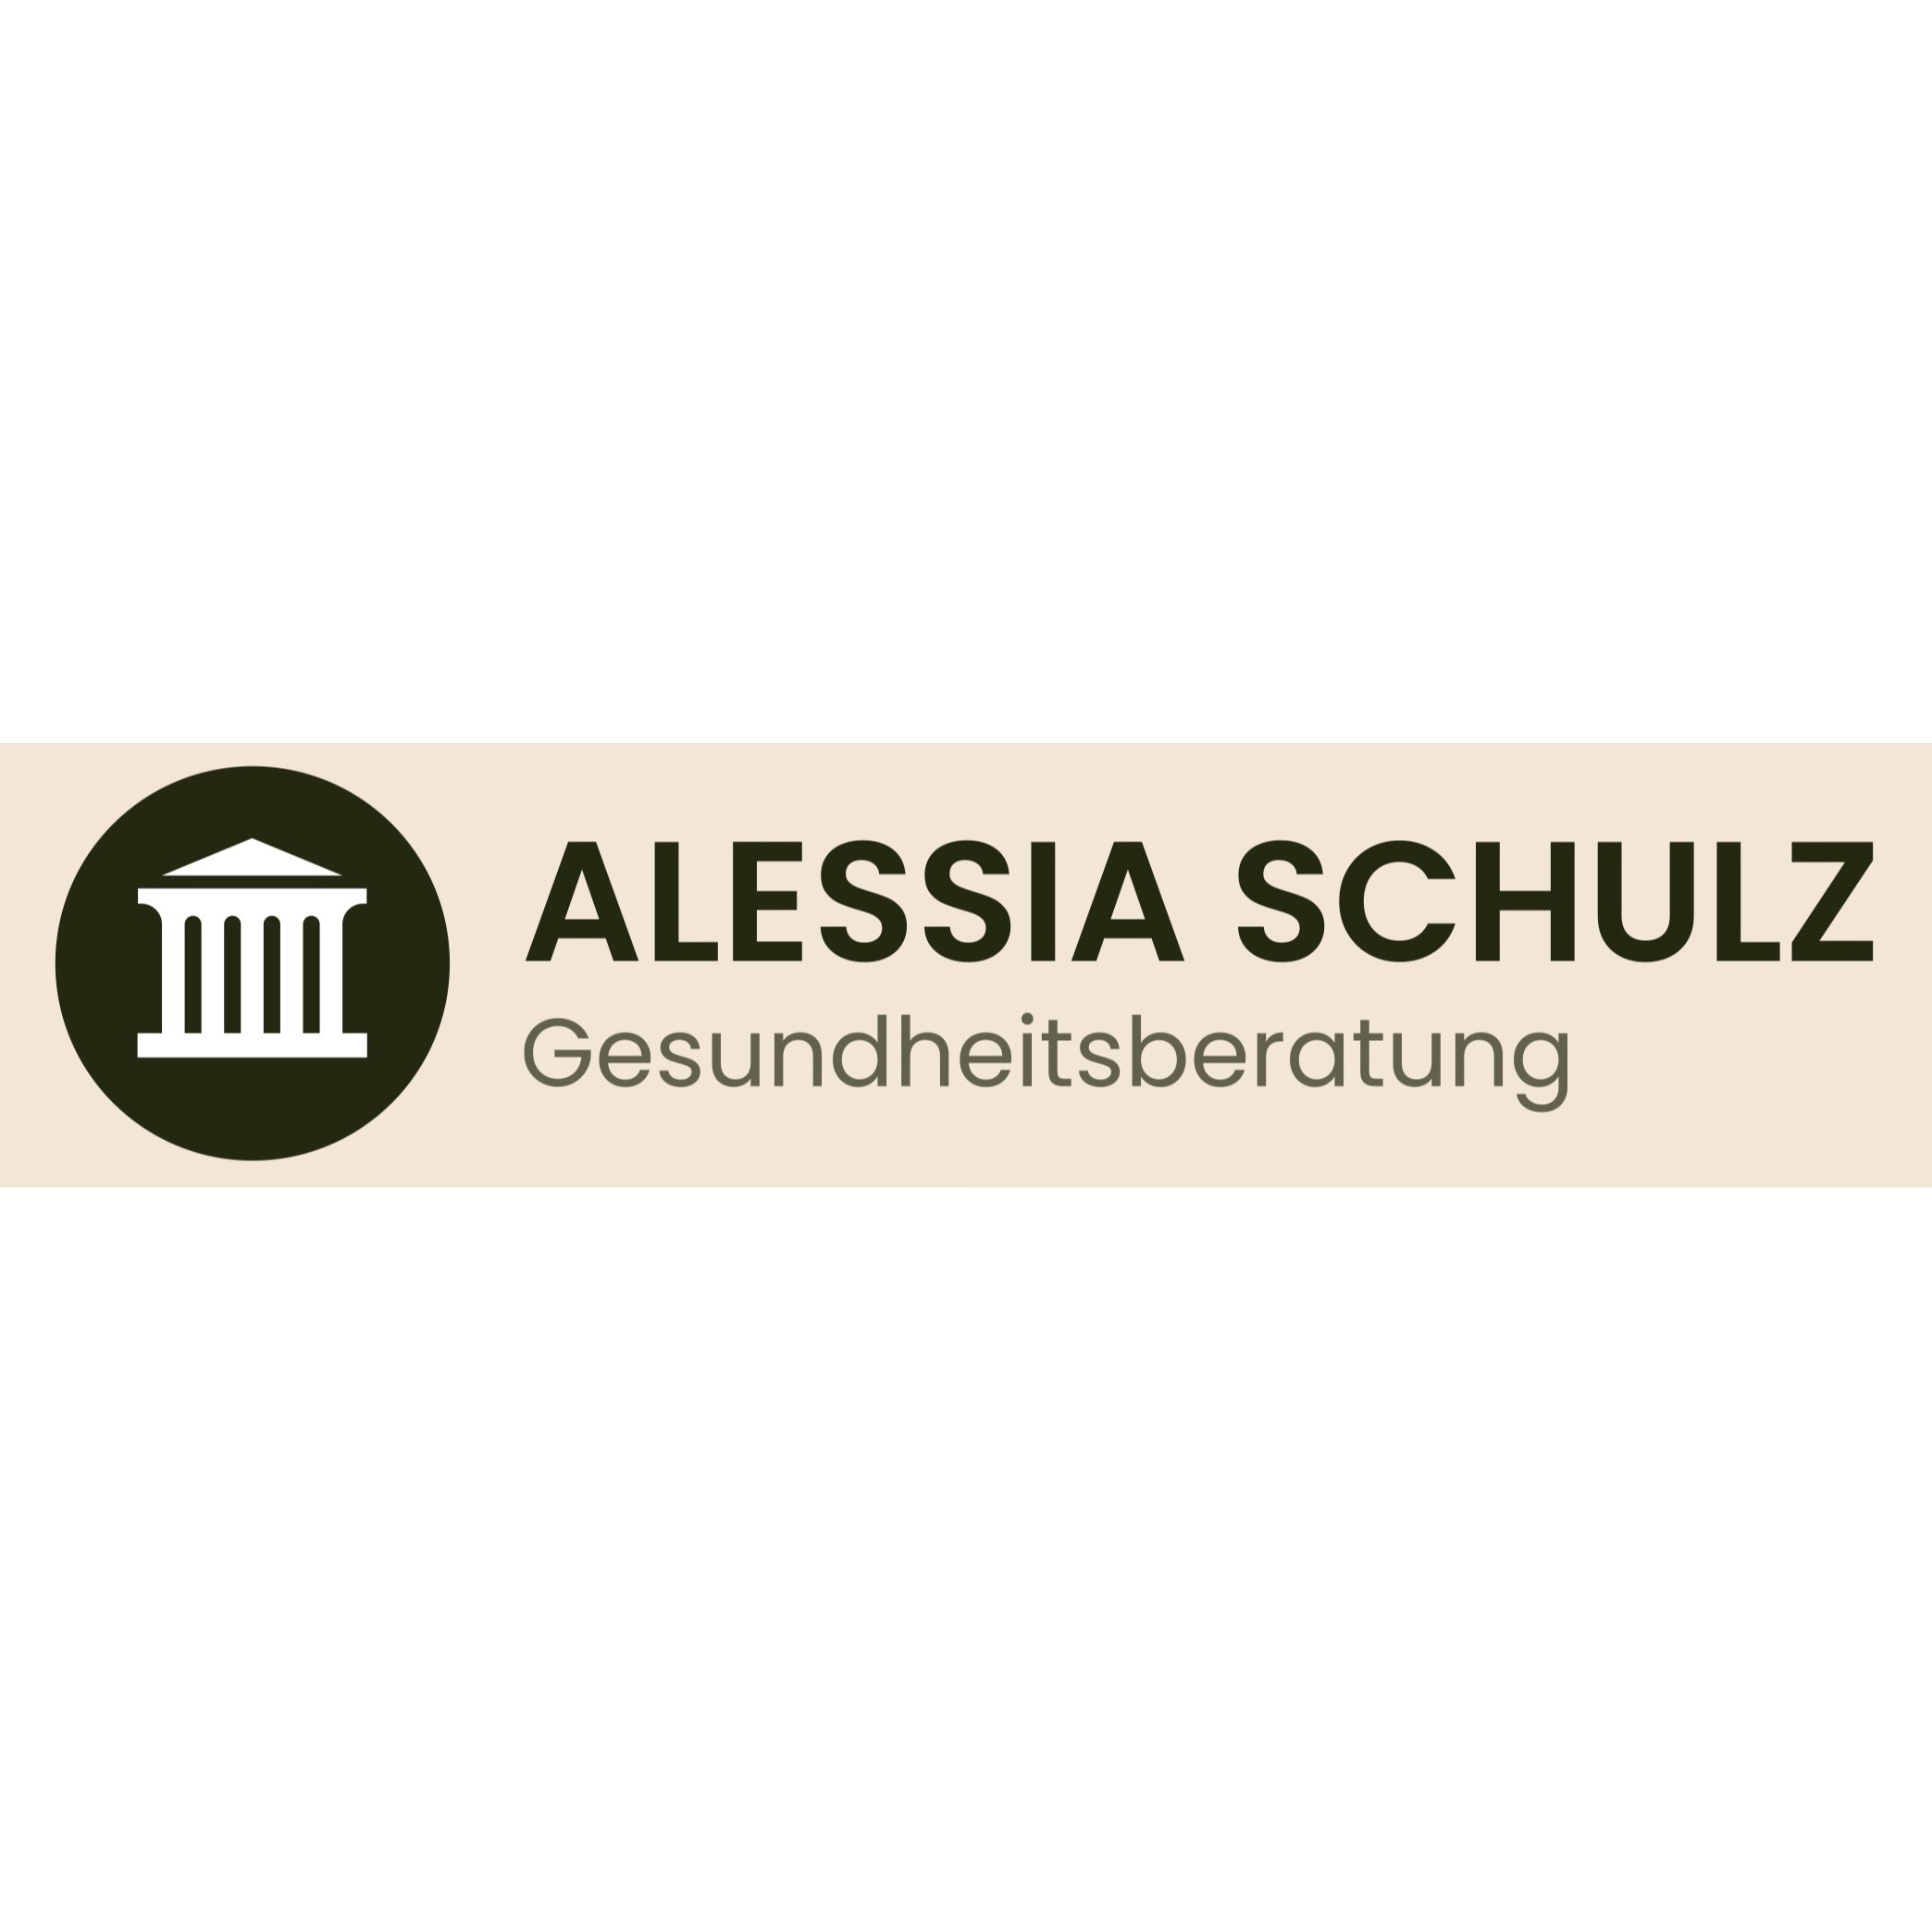 Alessia Schulz Gesundheits-und Ernährungsberatung in Nürnberg - Logo